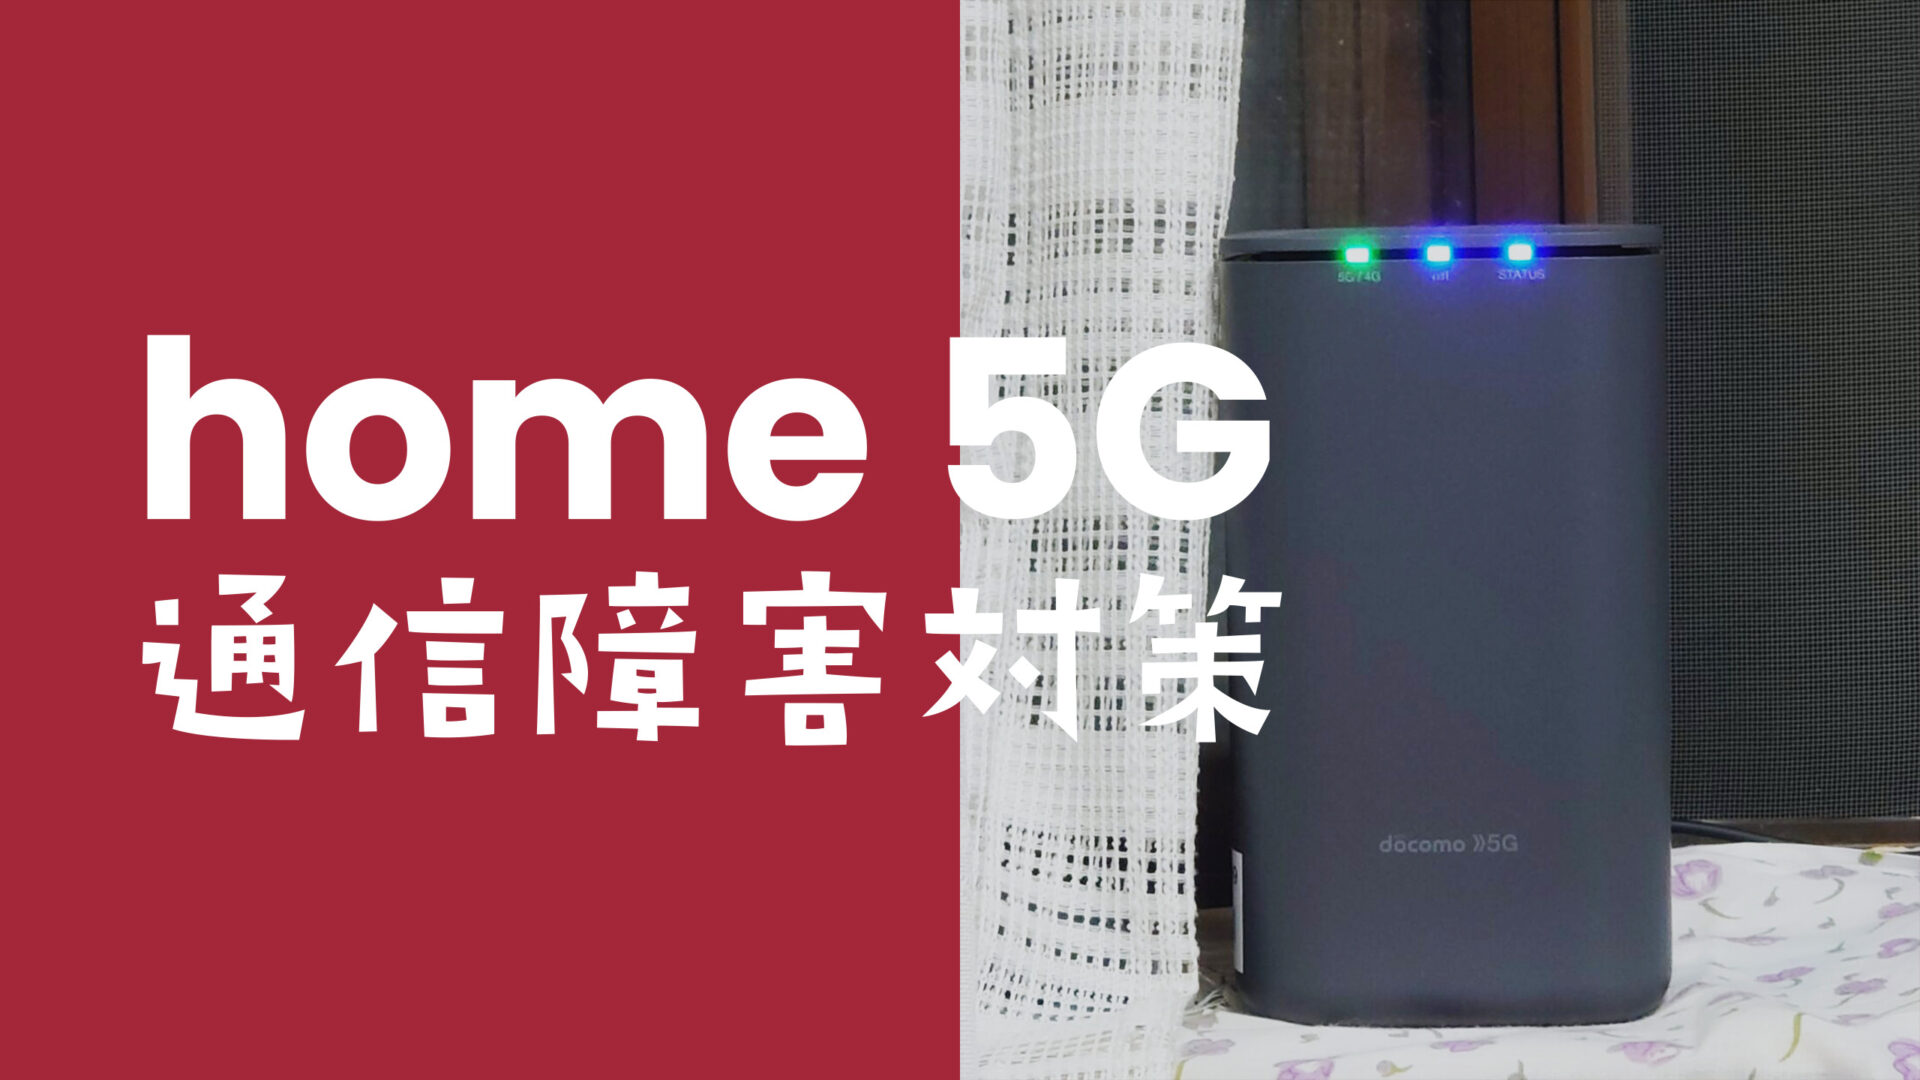 ドコモ home 5Gの通信障害の過去の例や対策方法を解説【ホーム5G】のサムネイル画像